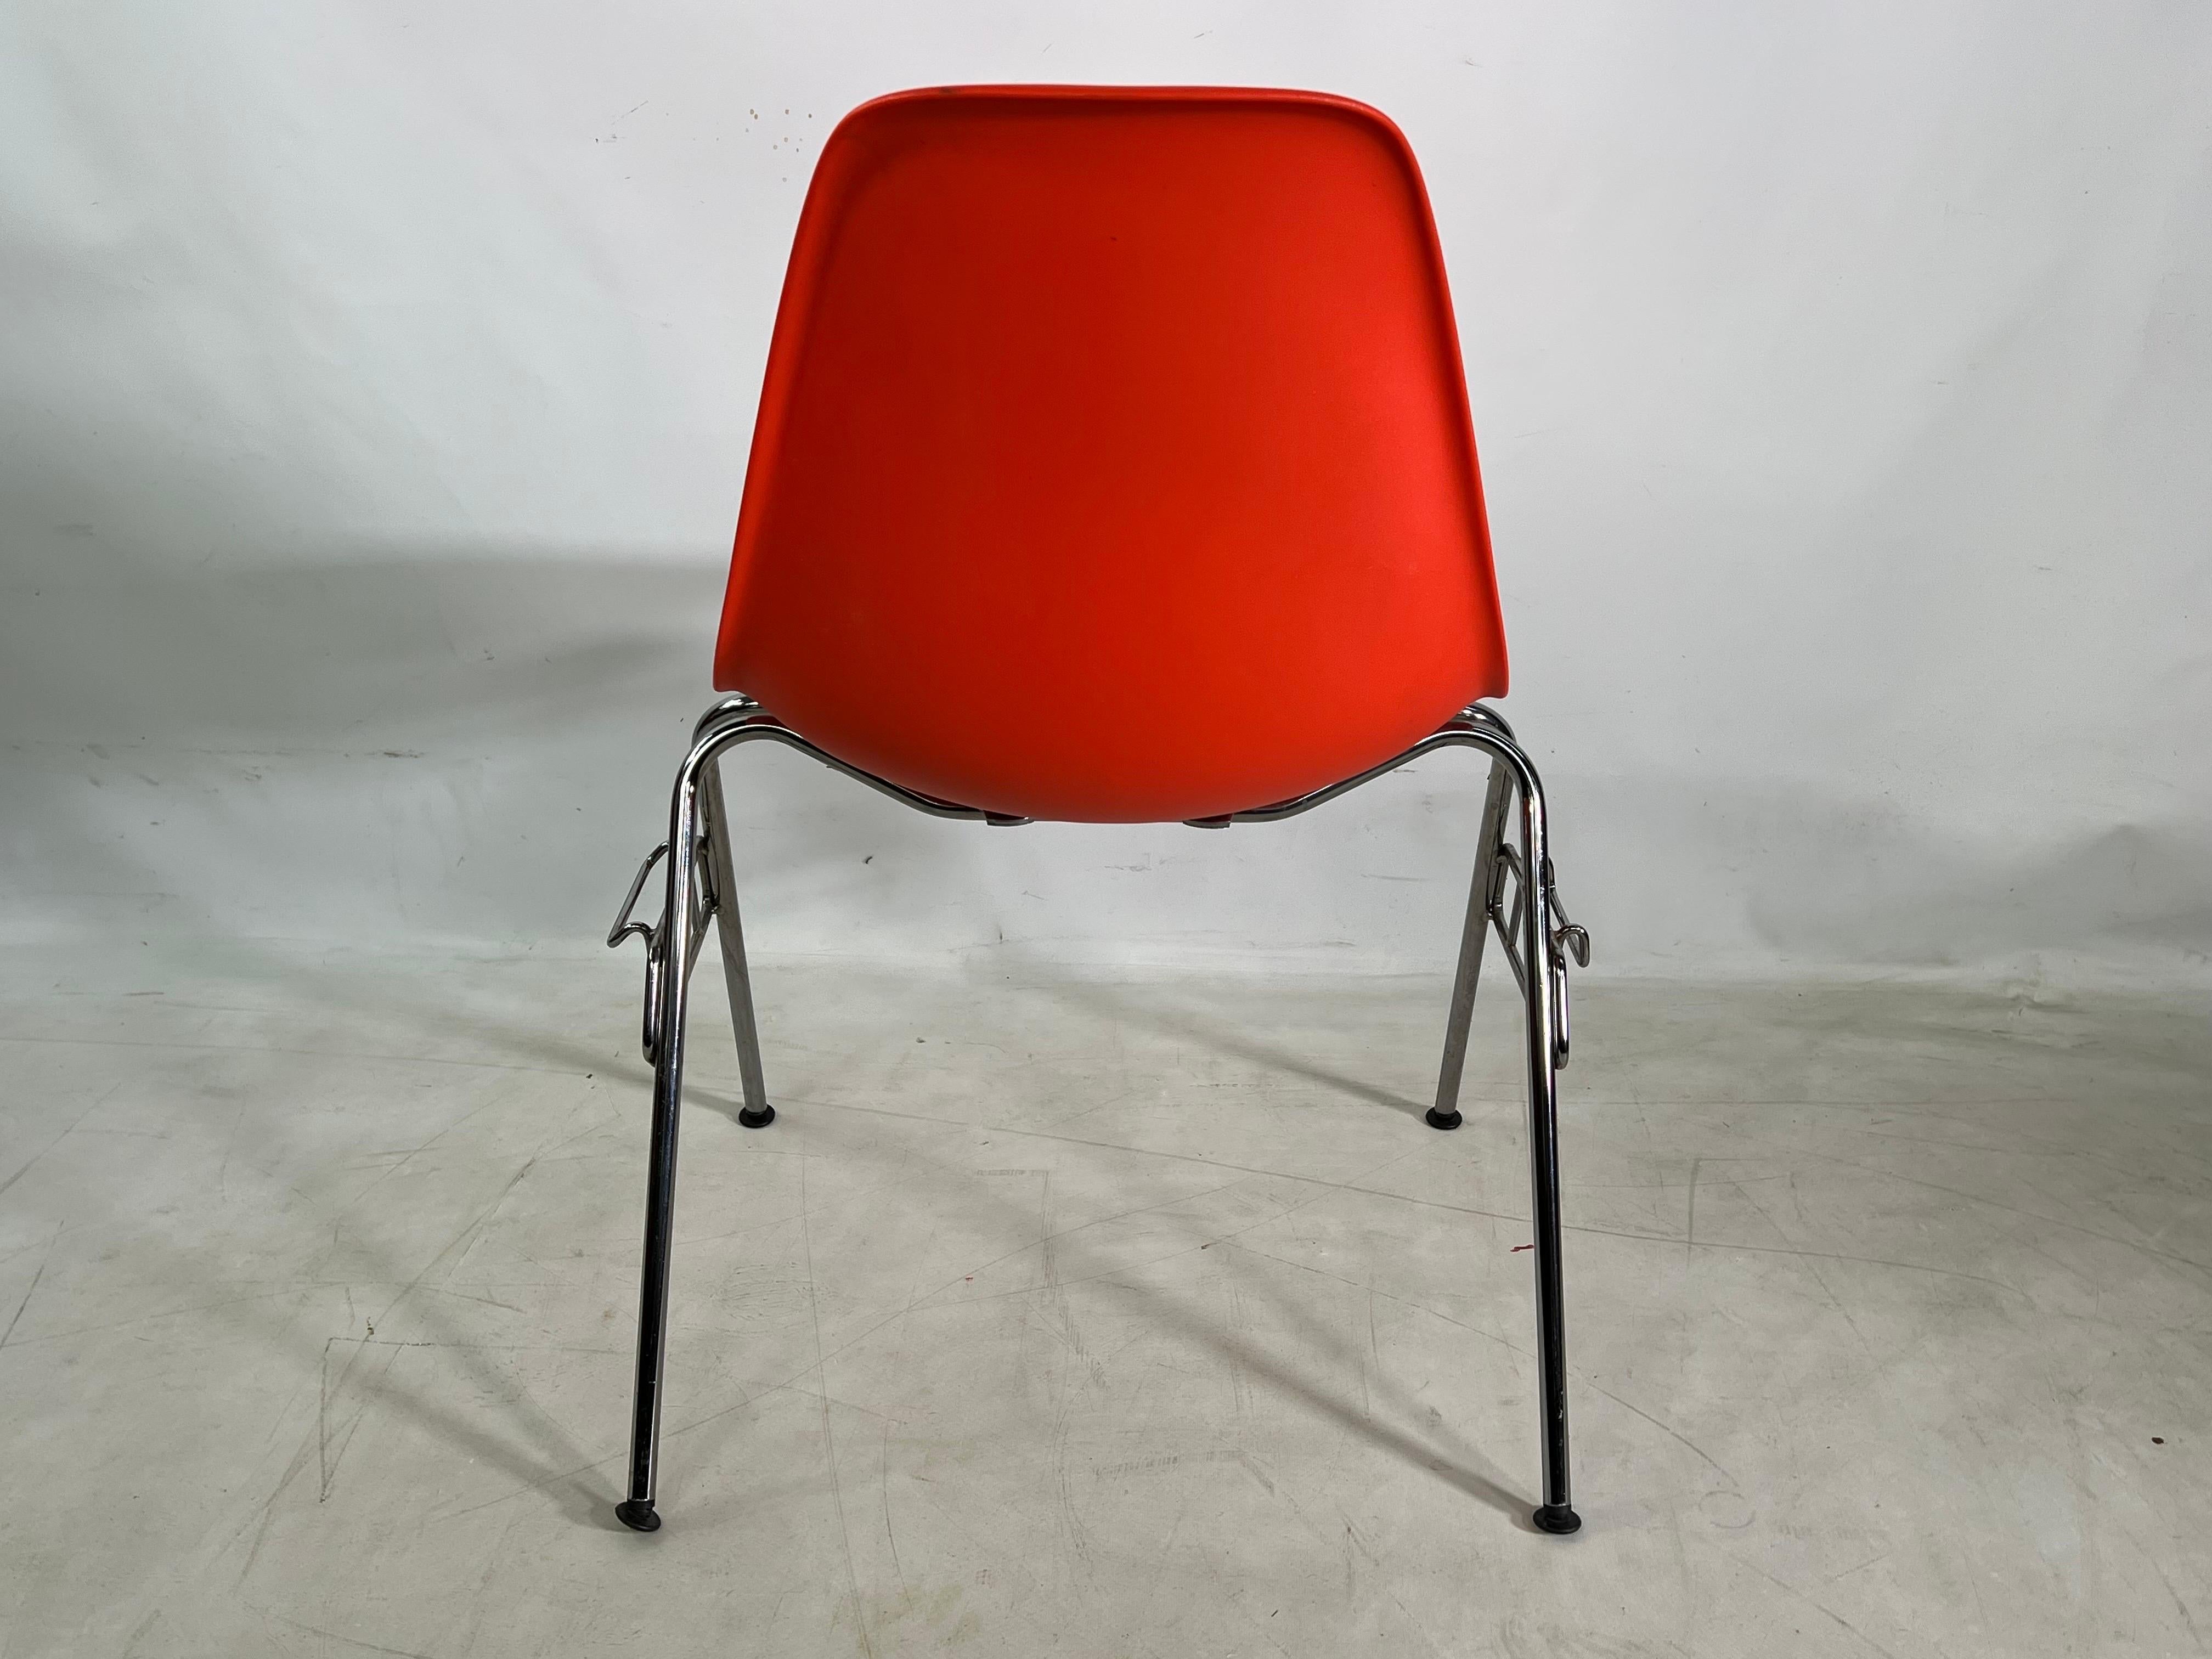 Modern Living - Dans les années 1950, la coque moulée d'Eames a changé tout ce qu'une chaise pouvait être : sculpturale, pratique, produite en série. Désormais en polypropylène recyclable, cet élément de base de la vie moderne s'adapte à tous les